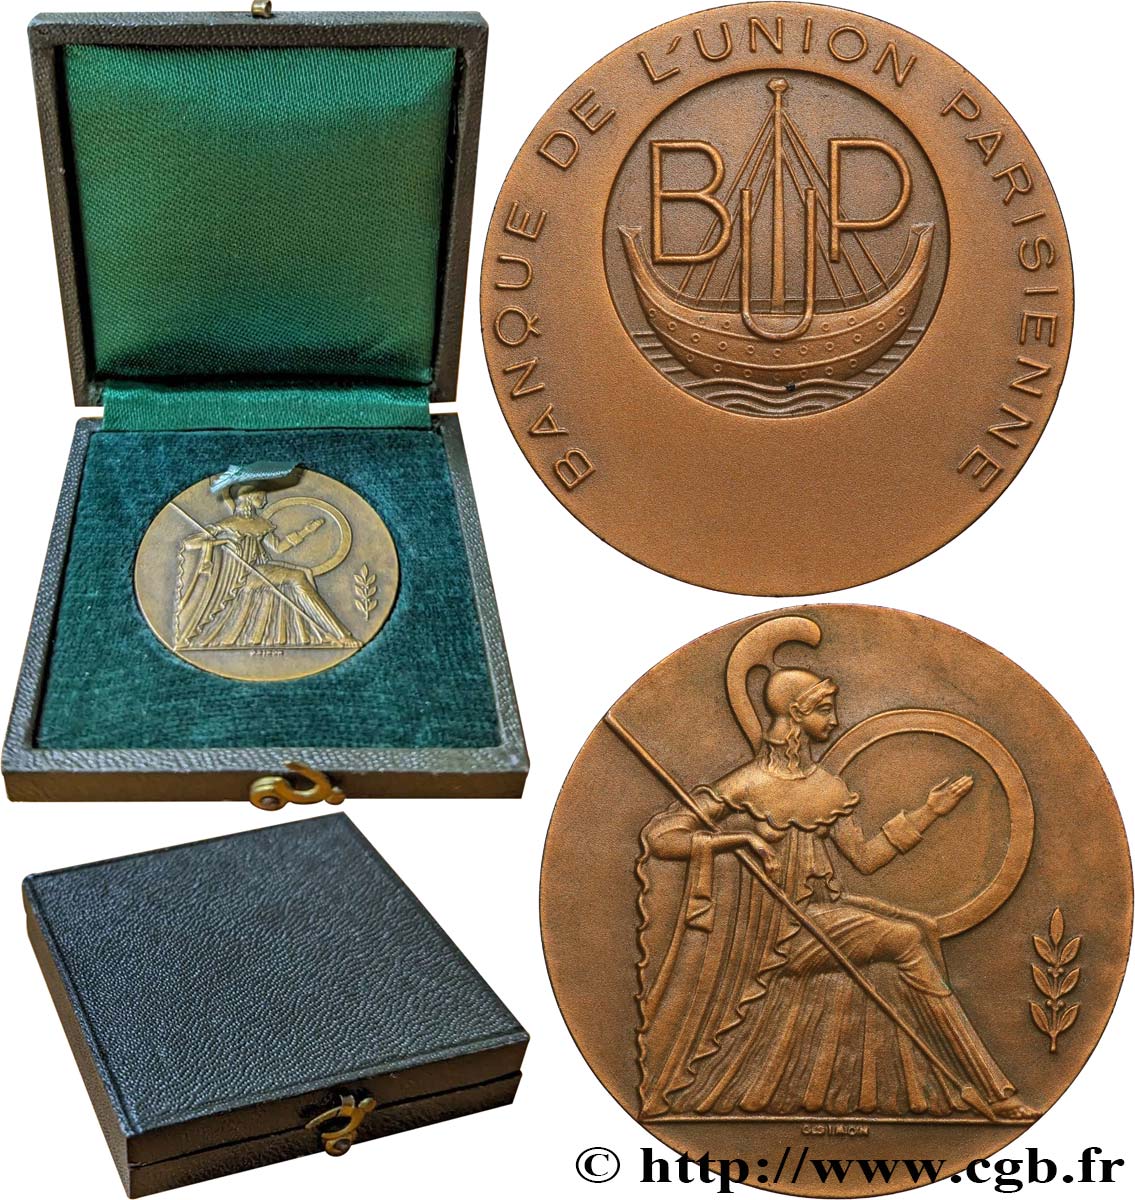 BANKS - CRÉDIT INSTITUTIONS Médaille, Banque de l’Union Parisienne AU